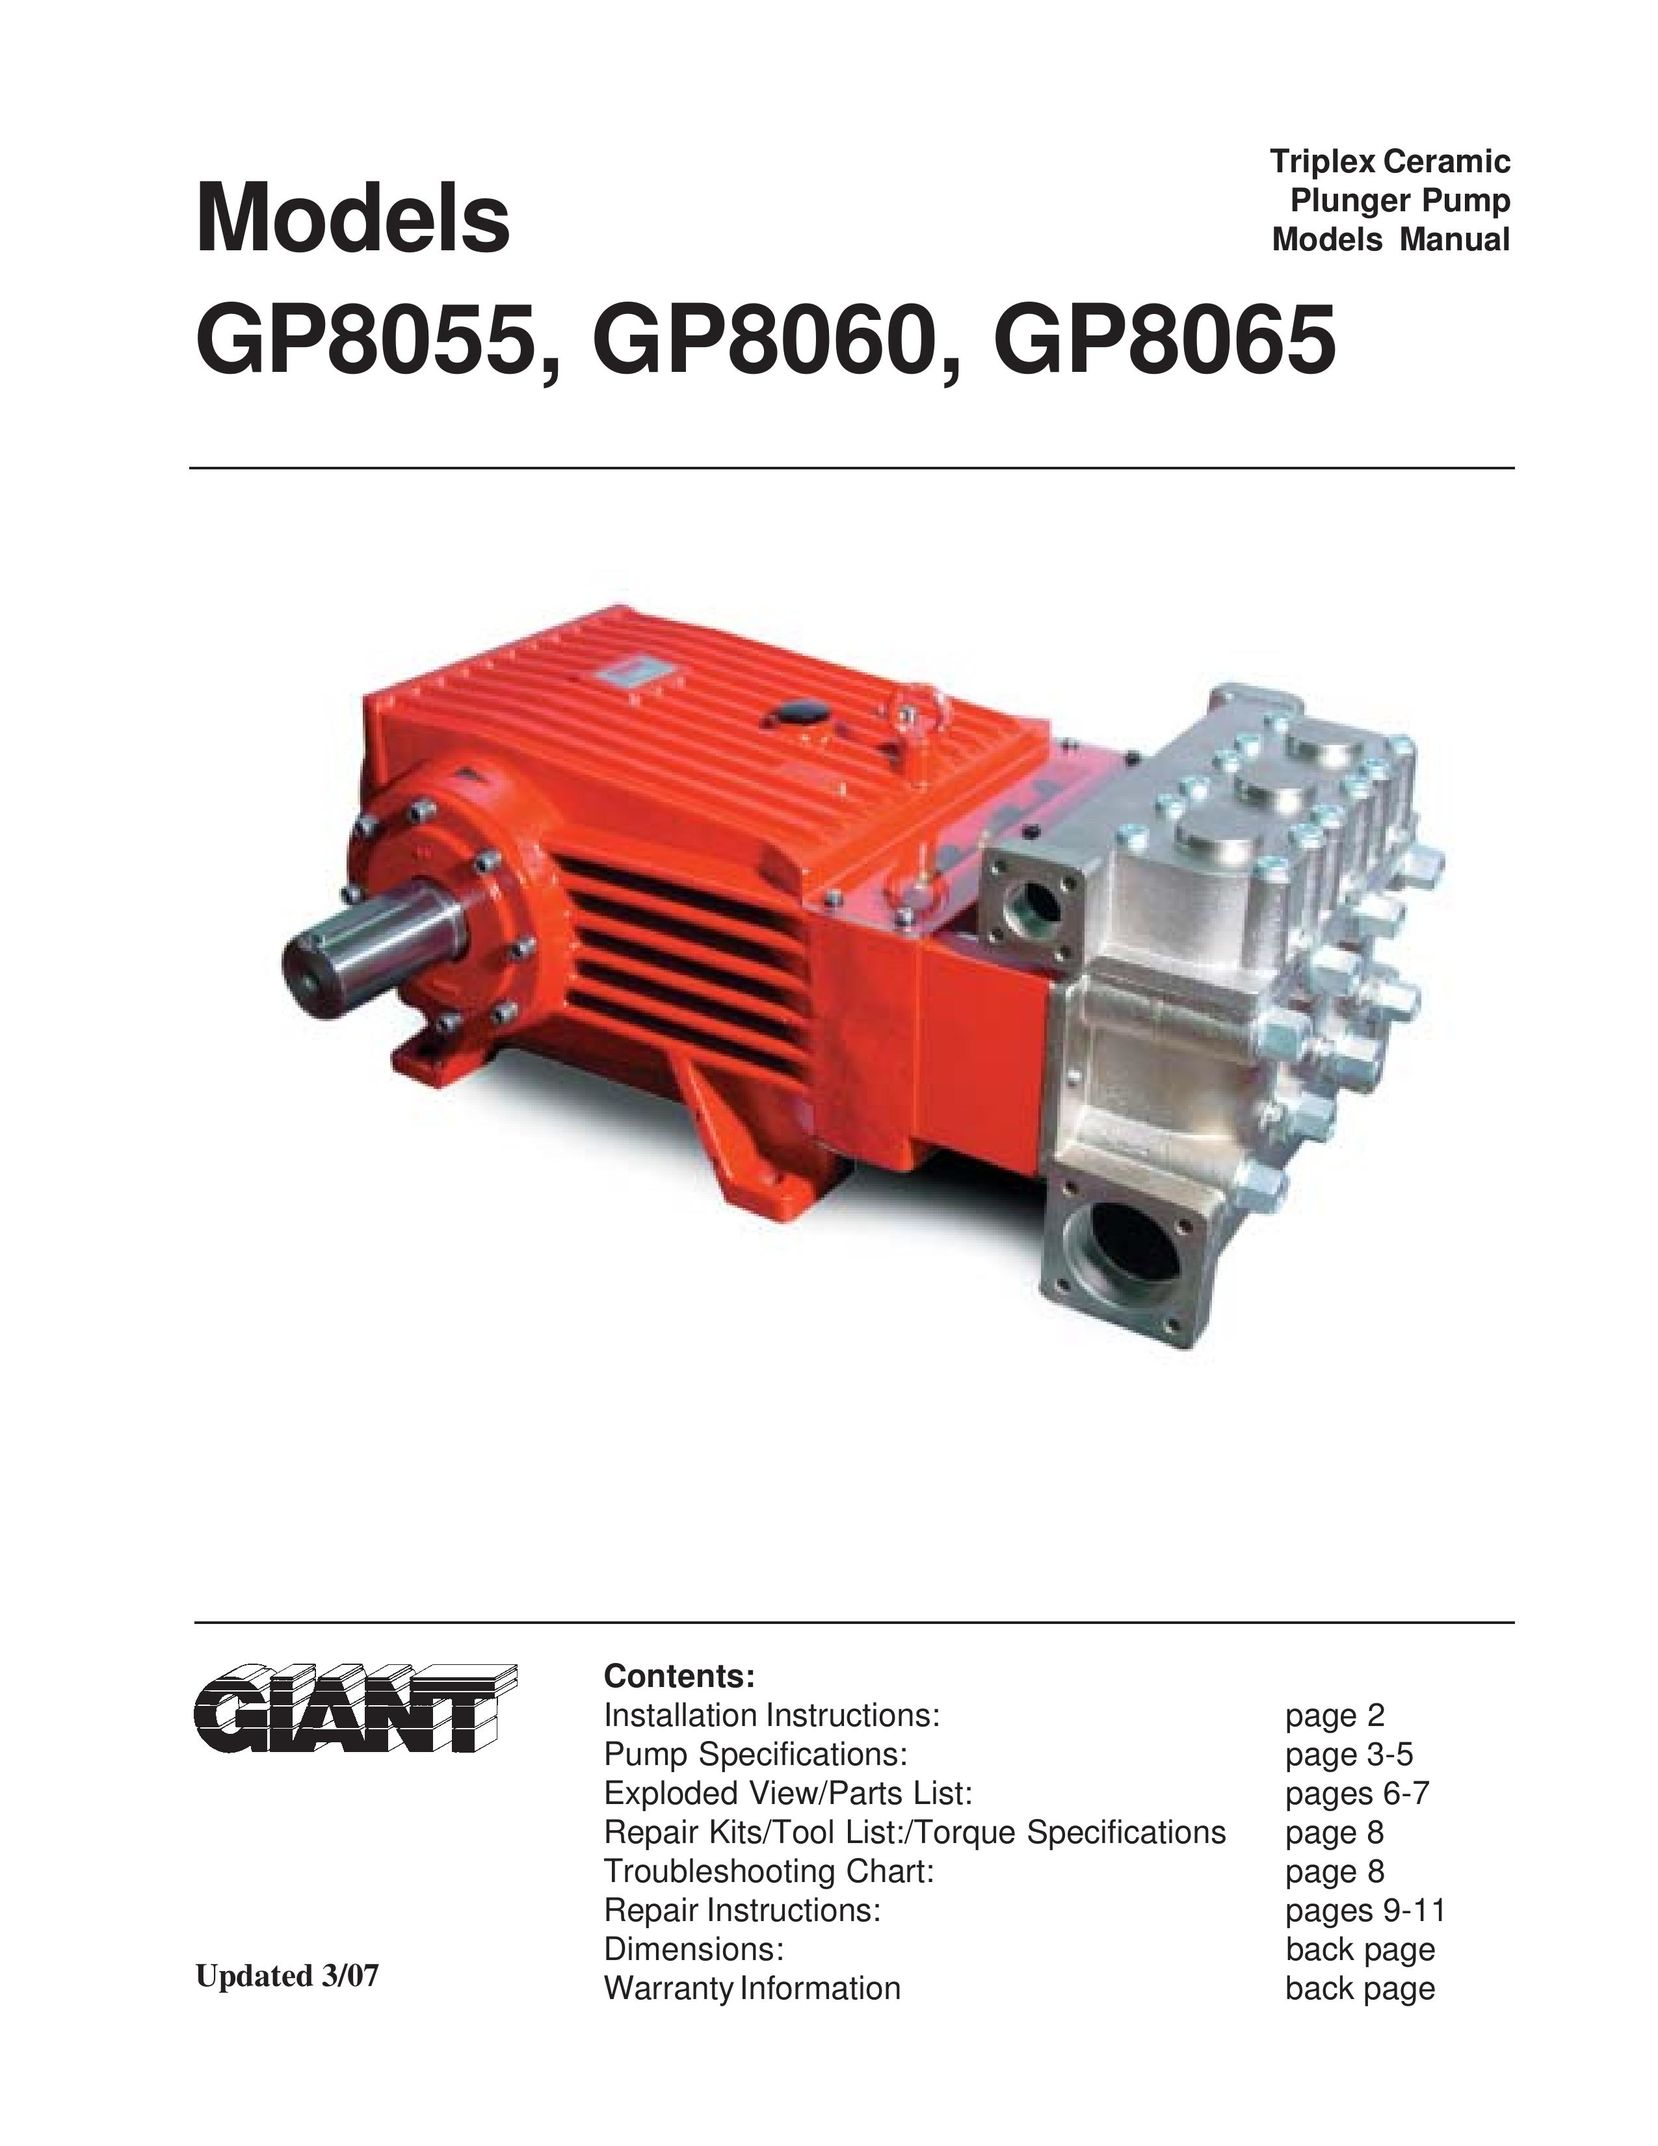 Giant GP8065 Water Pump User Manual